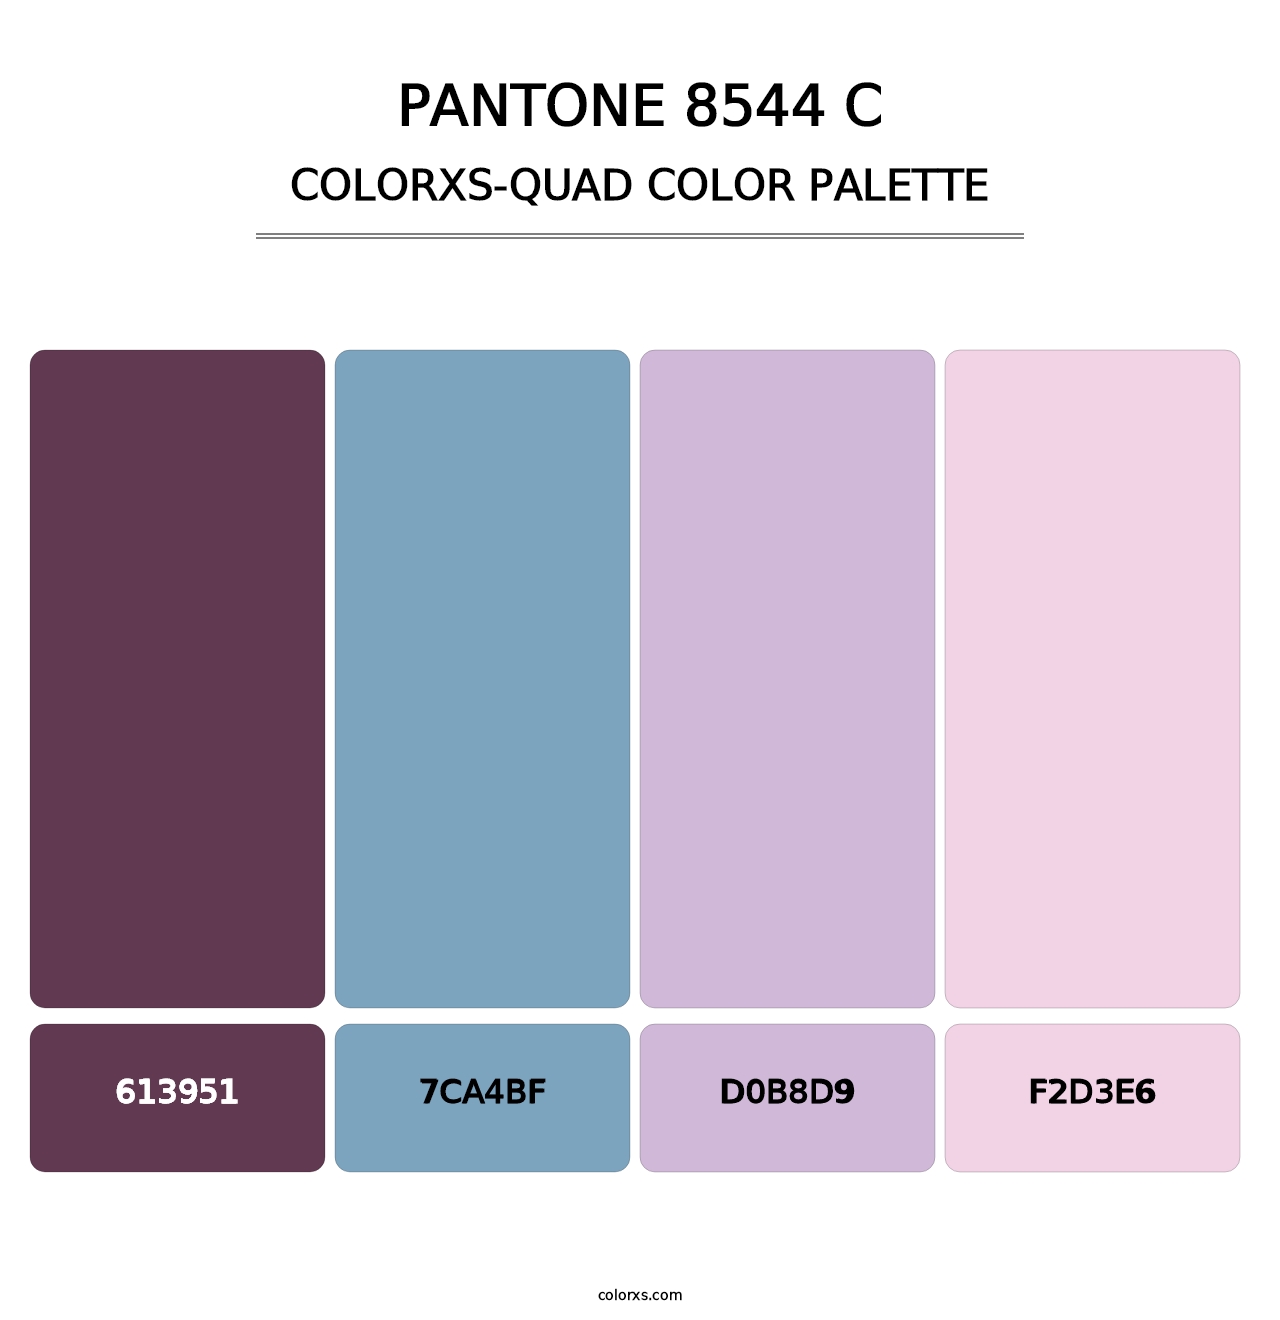 PANTONE 8544 C - Colorxs Quad Palette